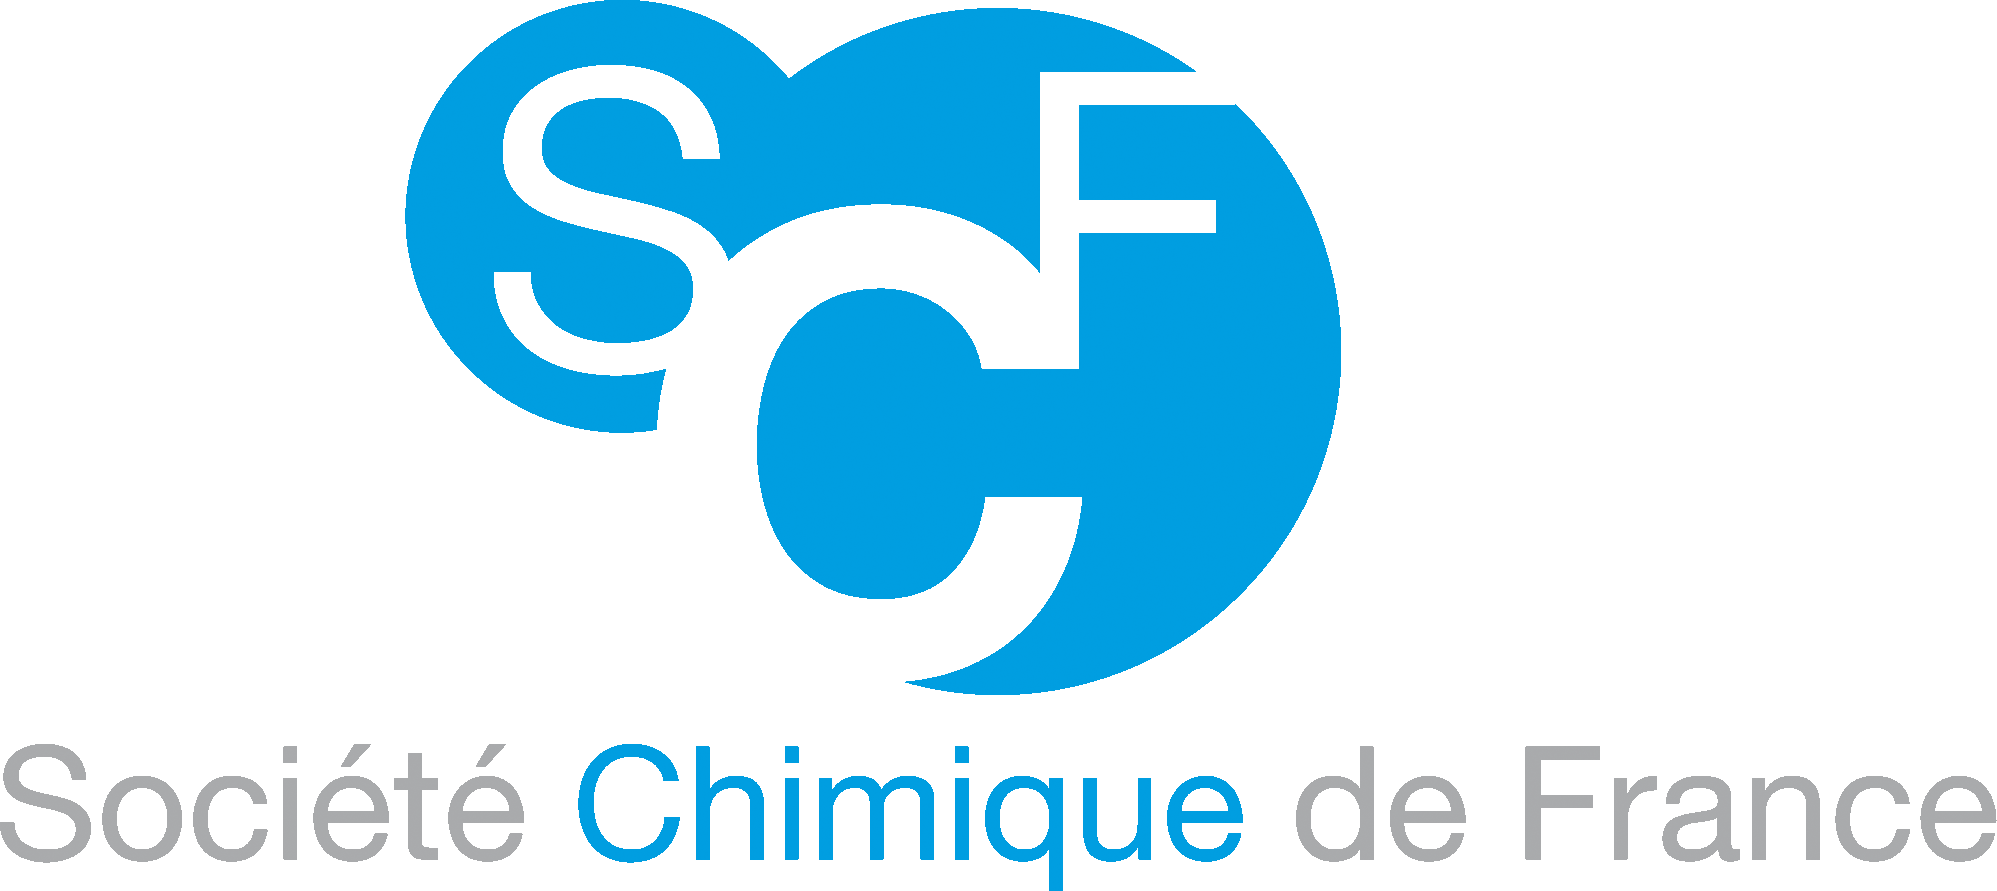 Division Chimie de Coordination de la Société Chimique de France